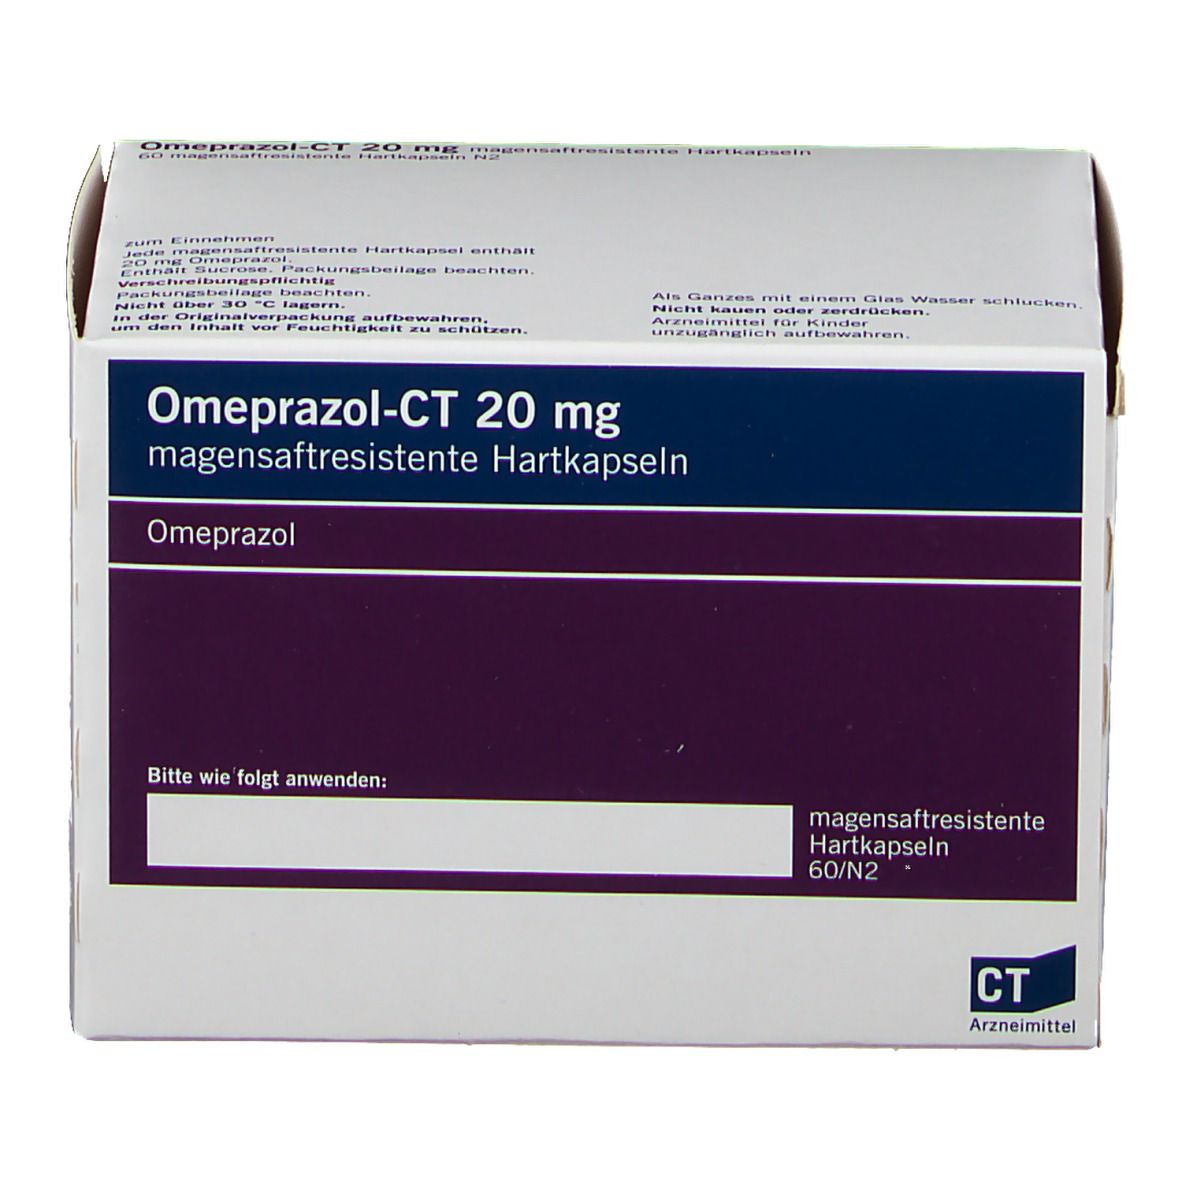 Omeprazol - Ct 20Mg a